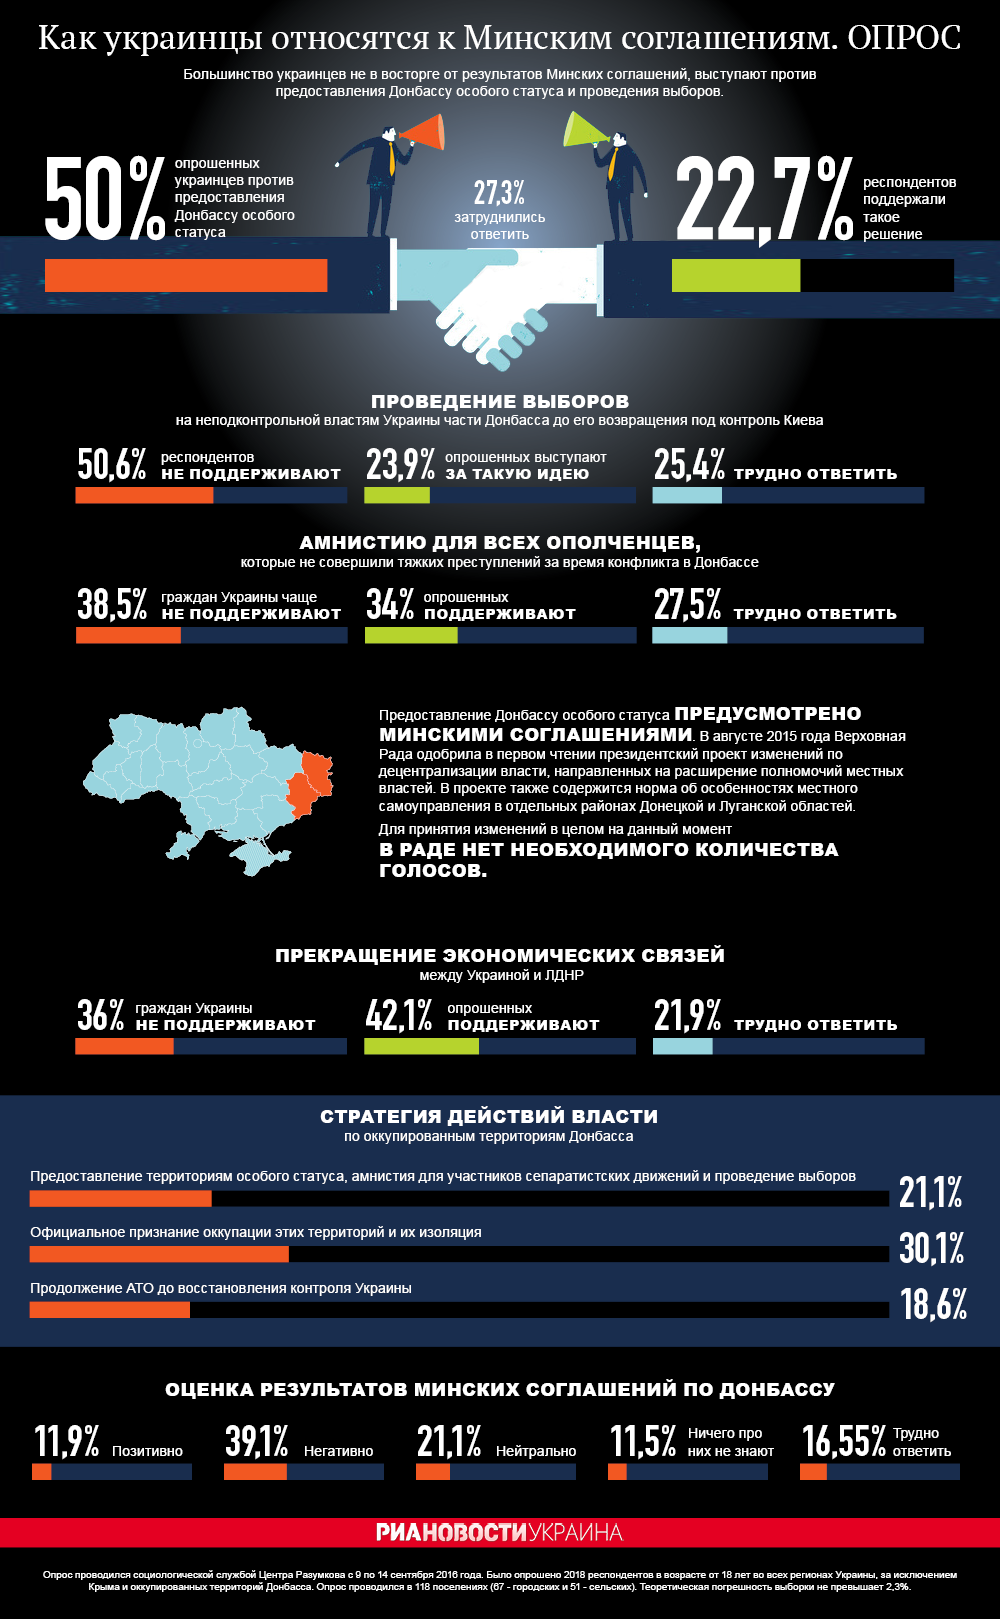 Отношение украинцев к Минским соглашениям - опрос. Инфографика